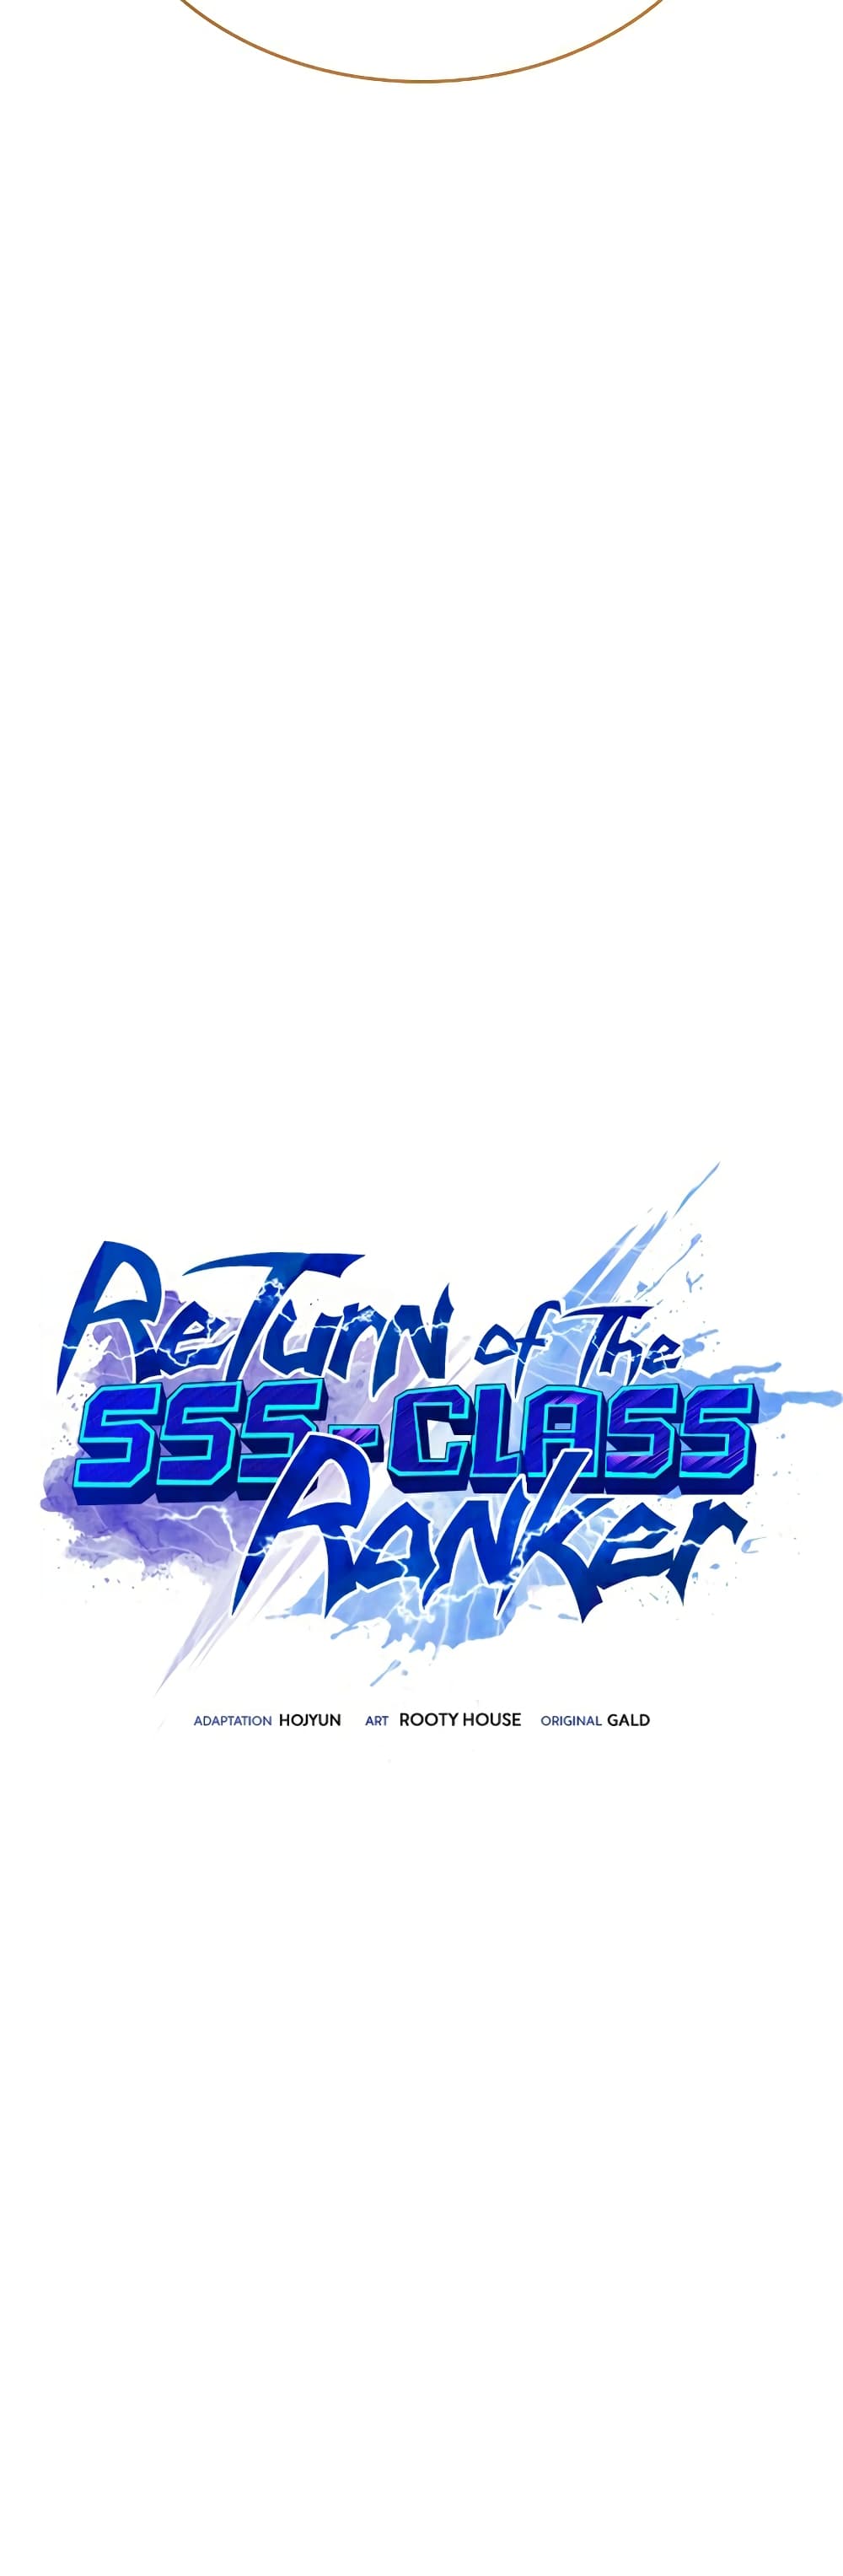 Return of the SSS-Class Ranker 41-41